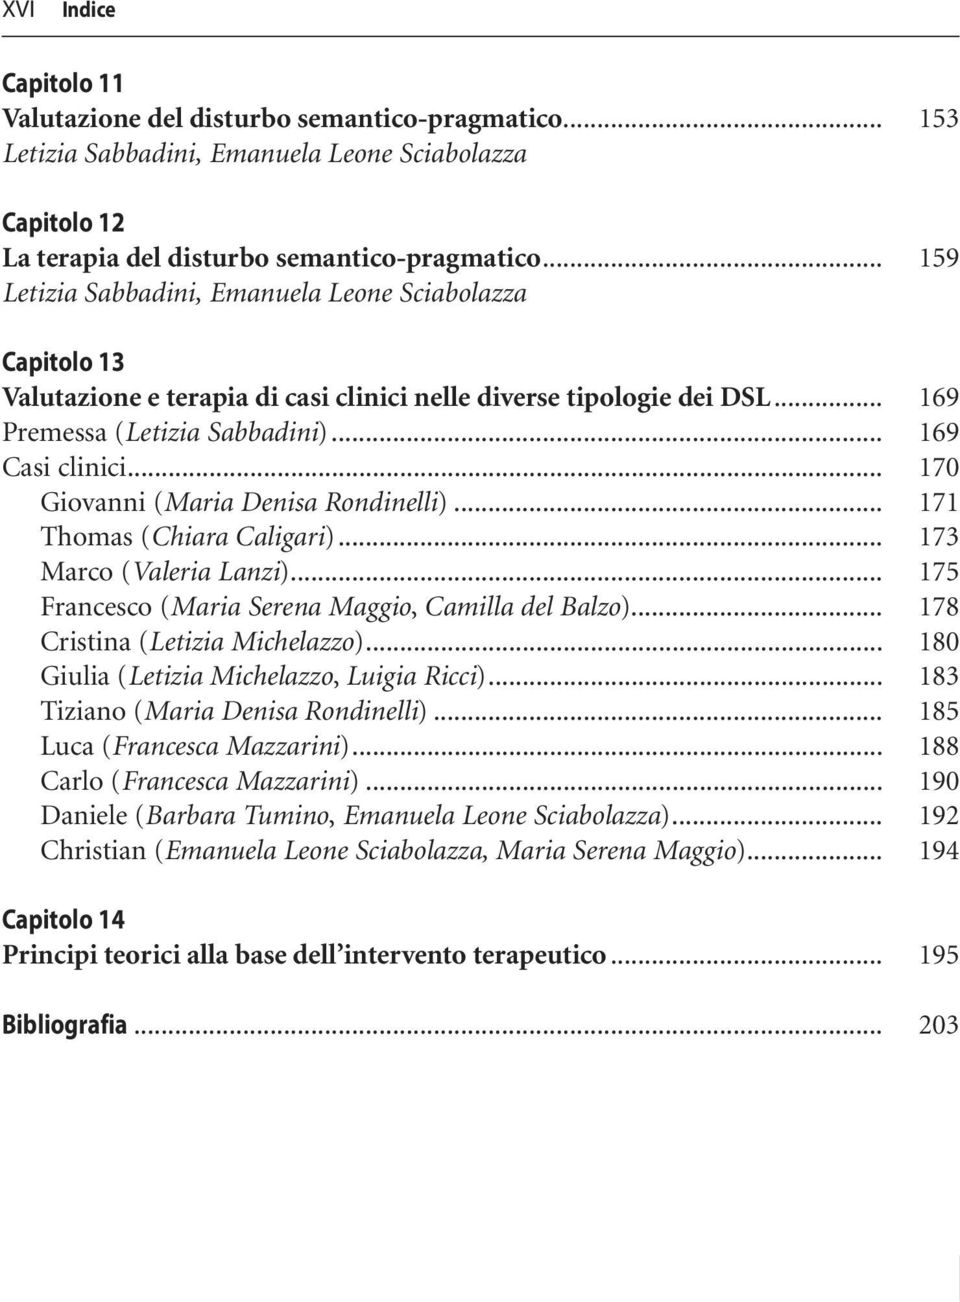 .. 170 Giovanni (Maria Denisa Rondinelli)... 171 Thomas (Chiara Caligari)... 173 Marco (Valeria Lanzi)... 175 Francesco (Maria Serena Maggio, Camilla del Balzo)... 178 Cristina (Letizia Michelazzo).